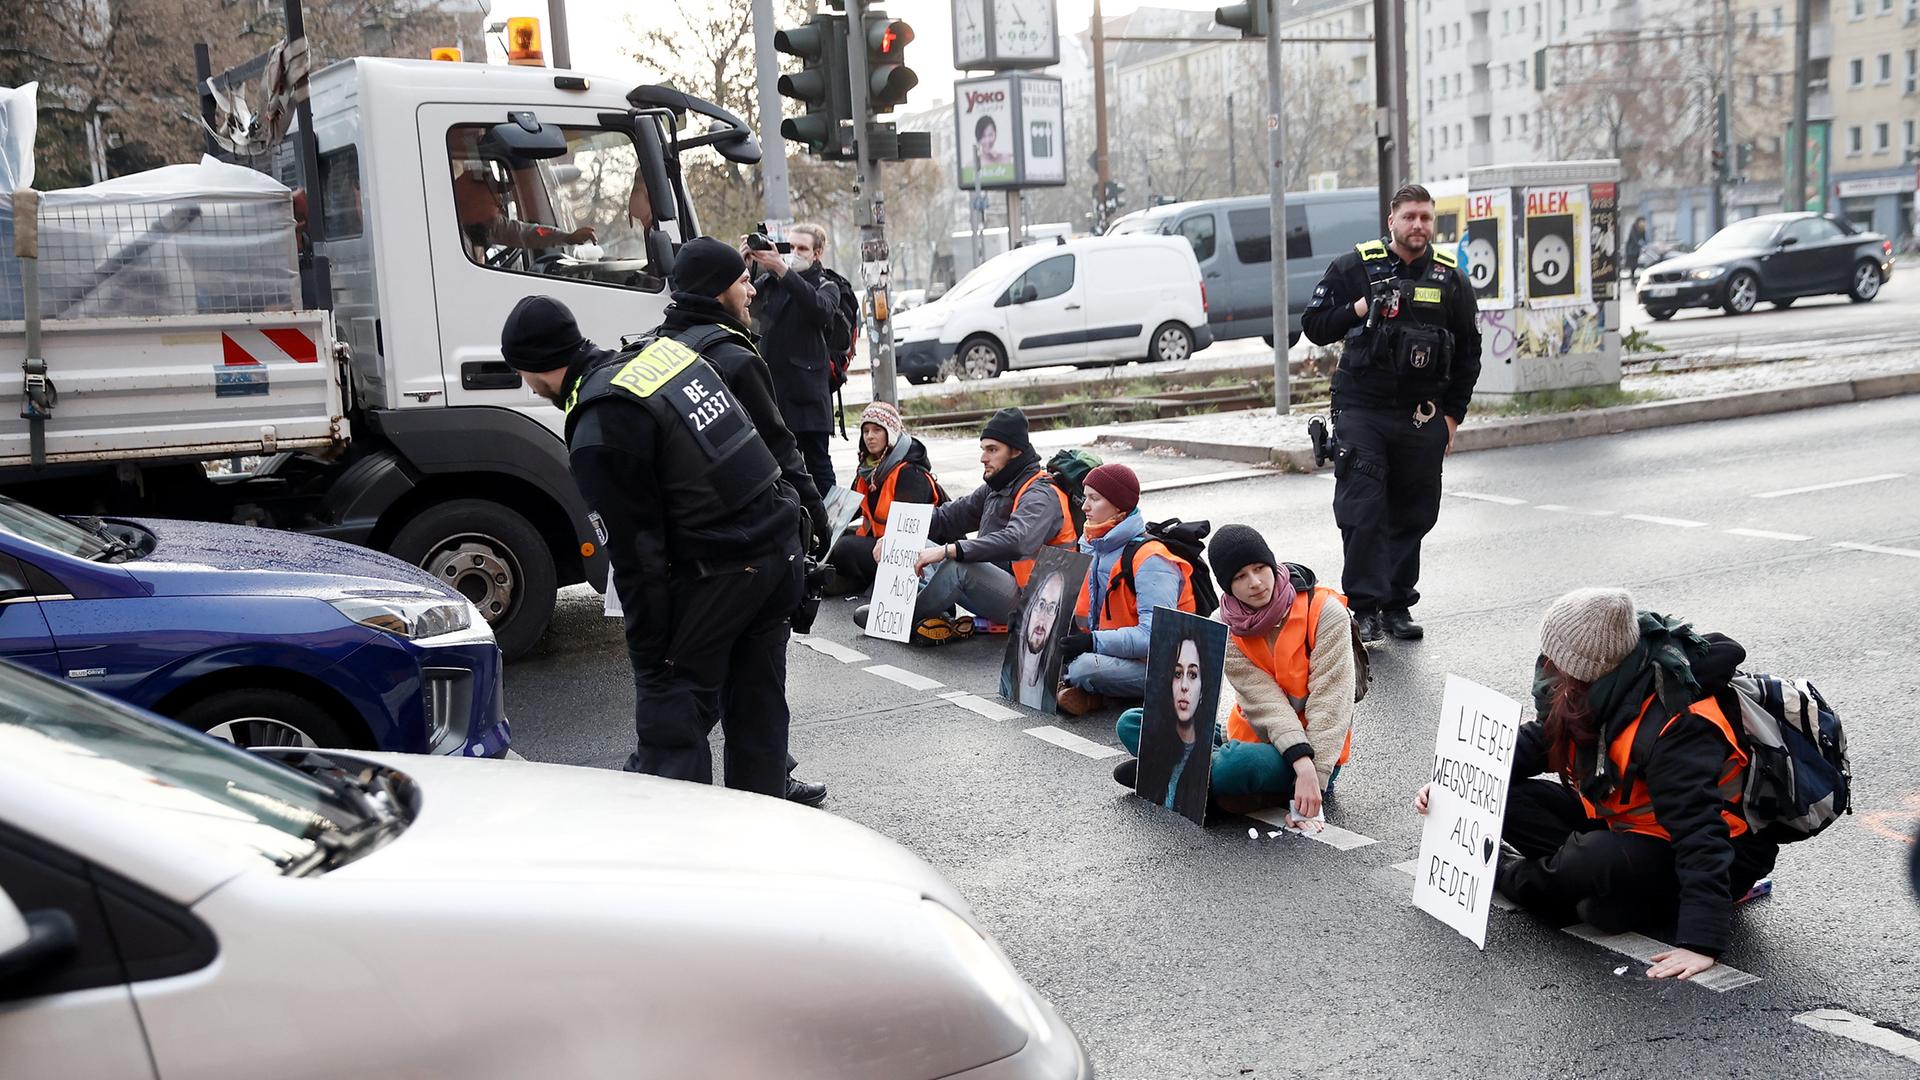 Aktivisten in Warnwesten sitzen in einer Reihe auf der Straße, umgeben von Autos.